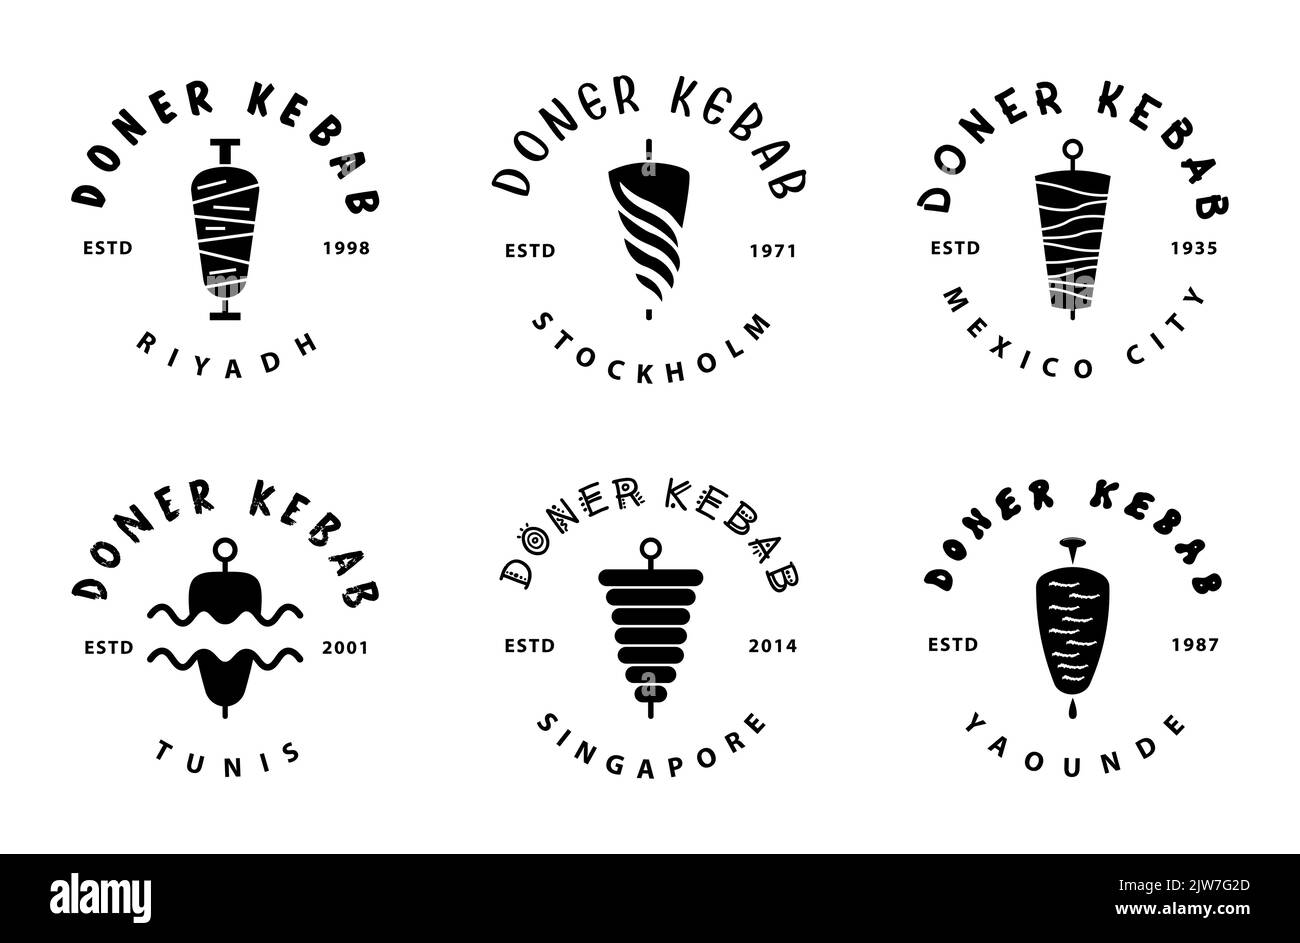 Doner Kebab big set collection. Fast Food Restaurant Design elements for logo, label, emblem, sign. Vector. Stock Vector